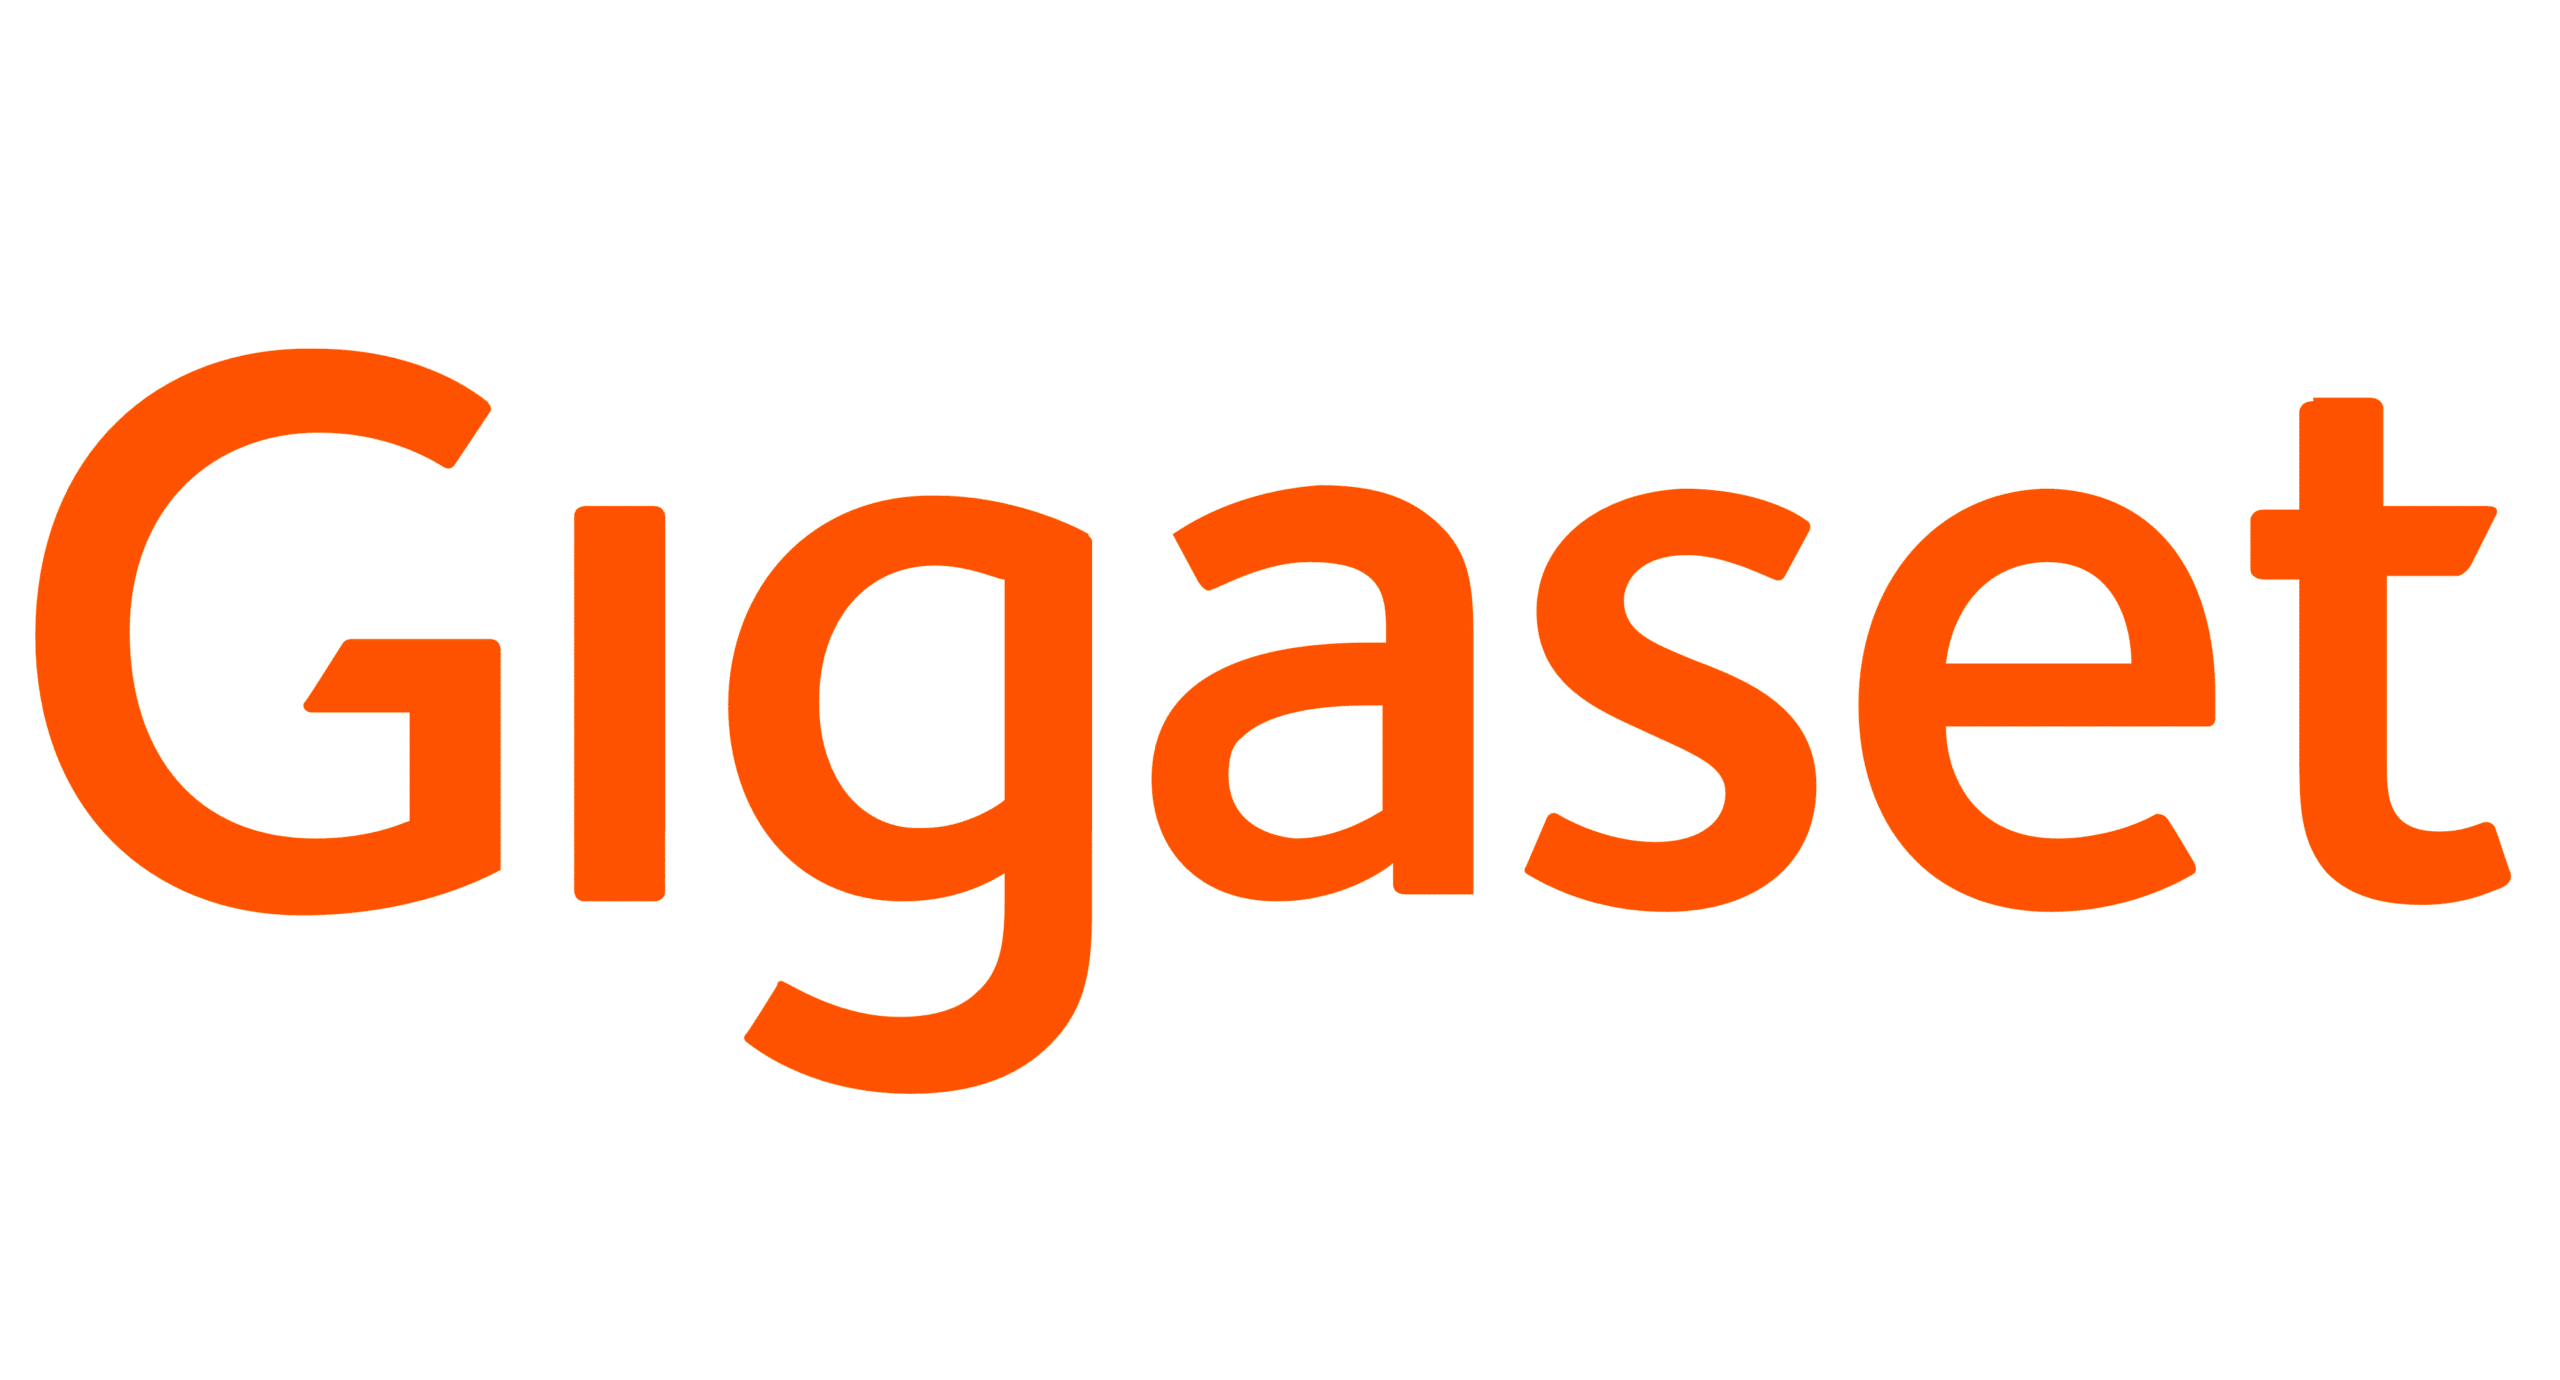 Gigaget Logo